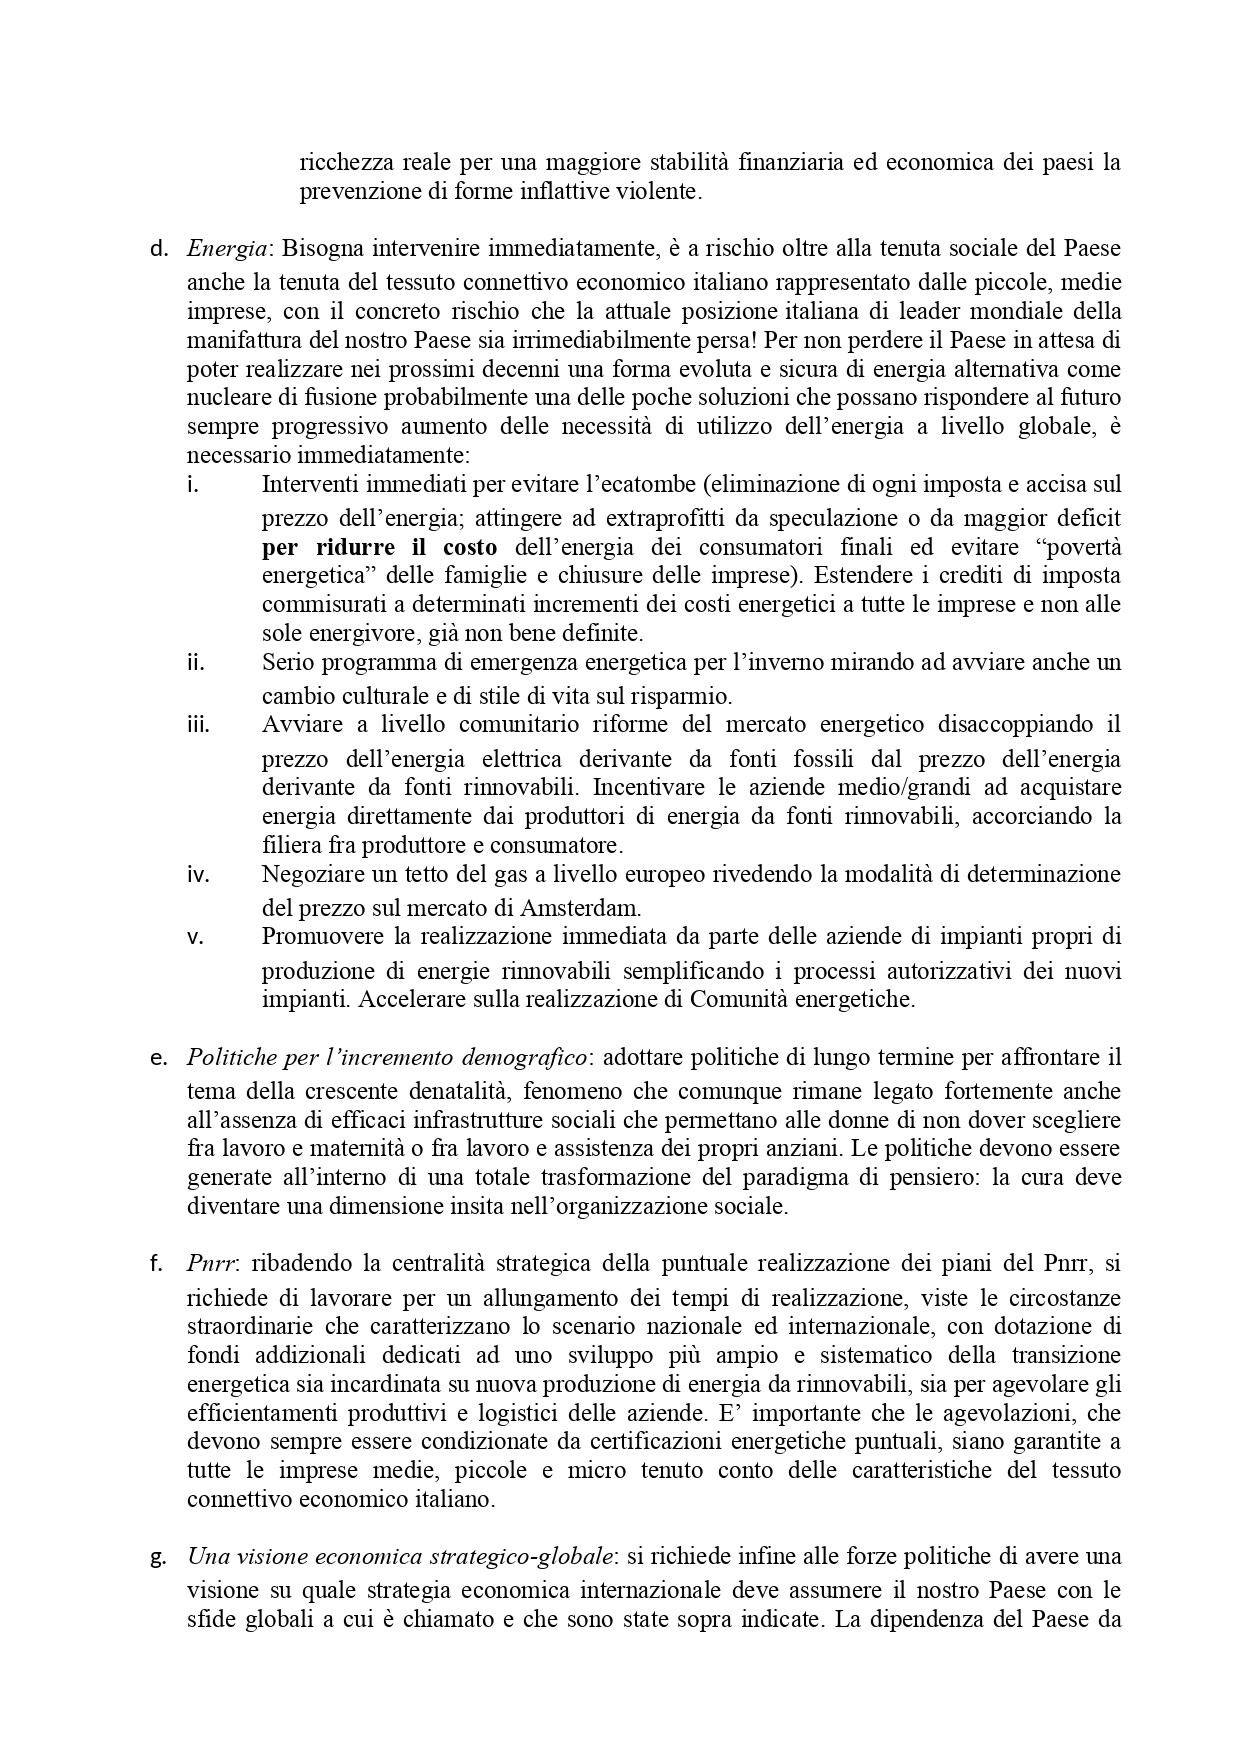 AIDDA_DOCUMENTO DI RICHIESTA ALLE FORZE POLITICHE_page-0004.jpg